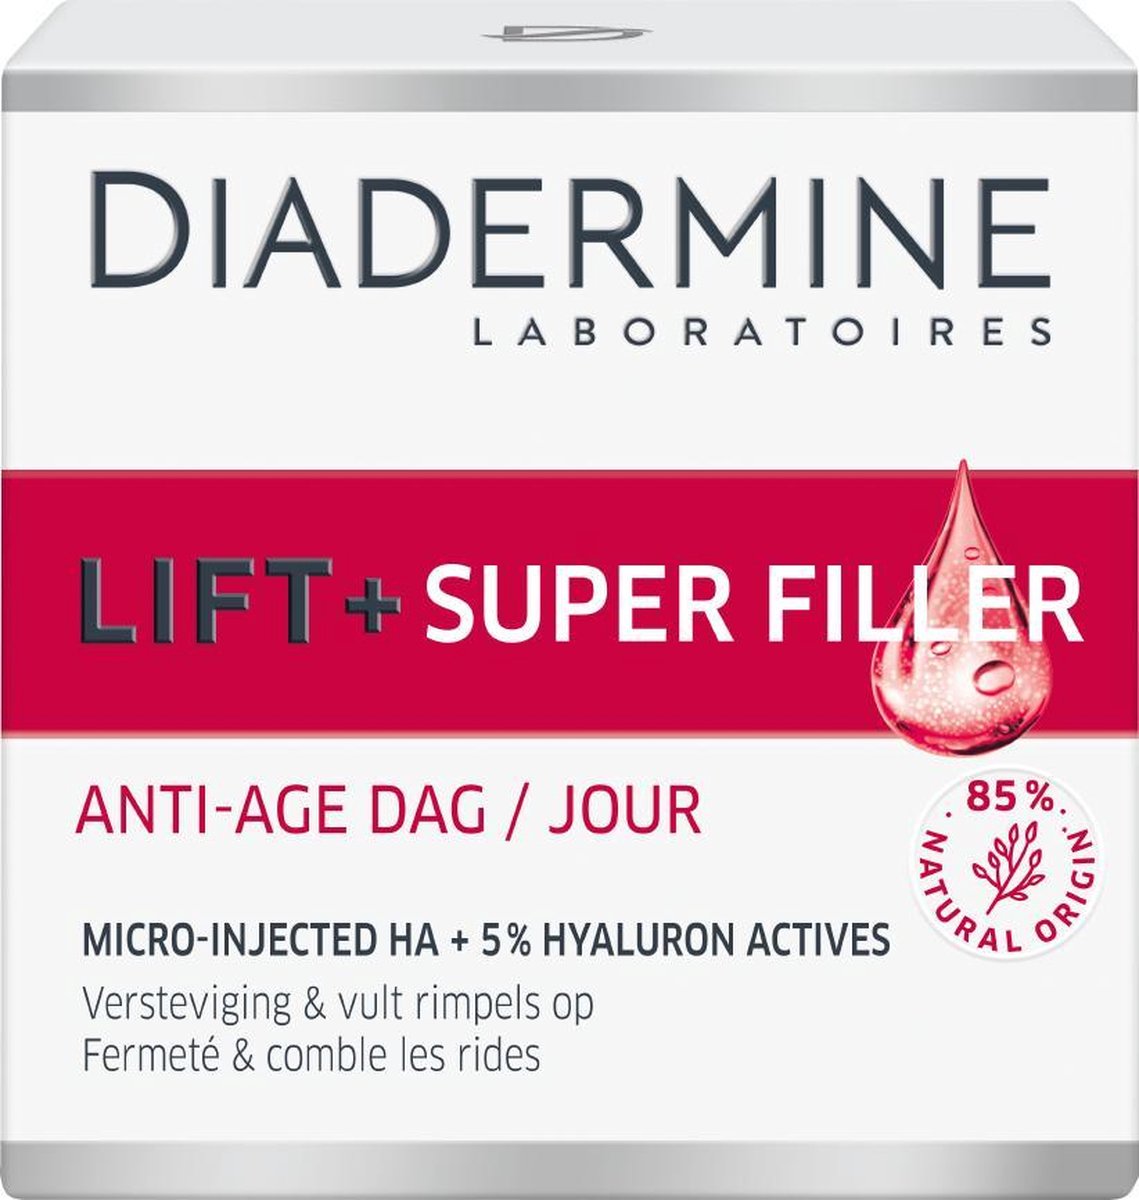 Diadermine Lift+ Hydratant Crème de Jour 50ml au meilleur prix